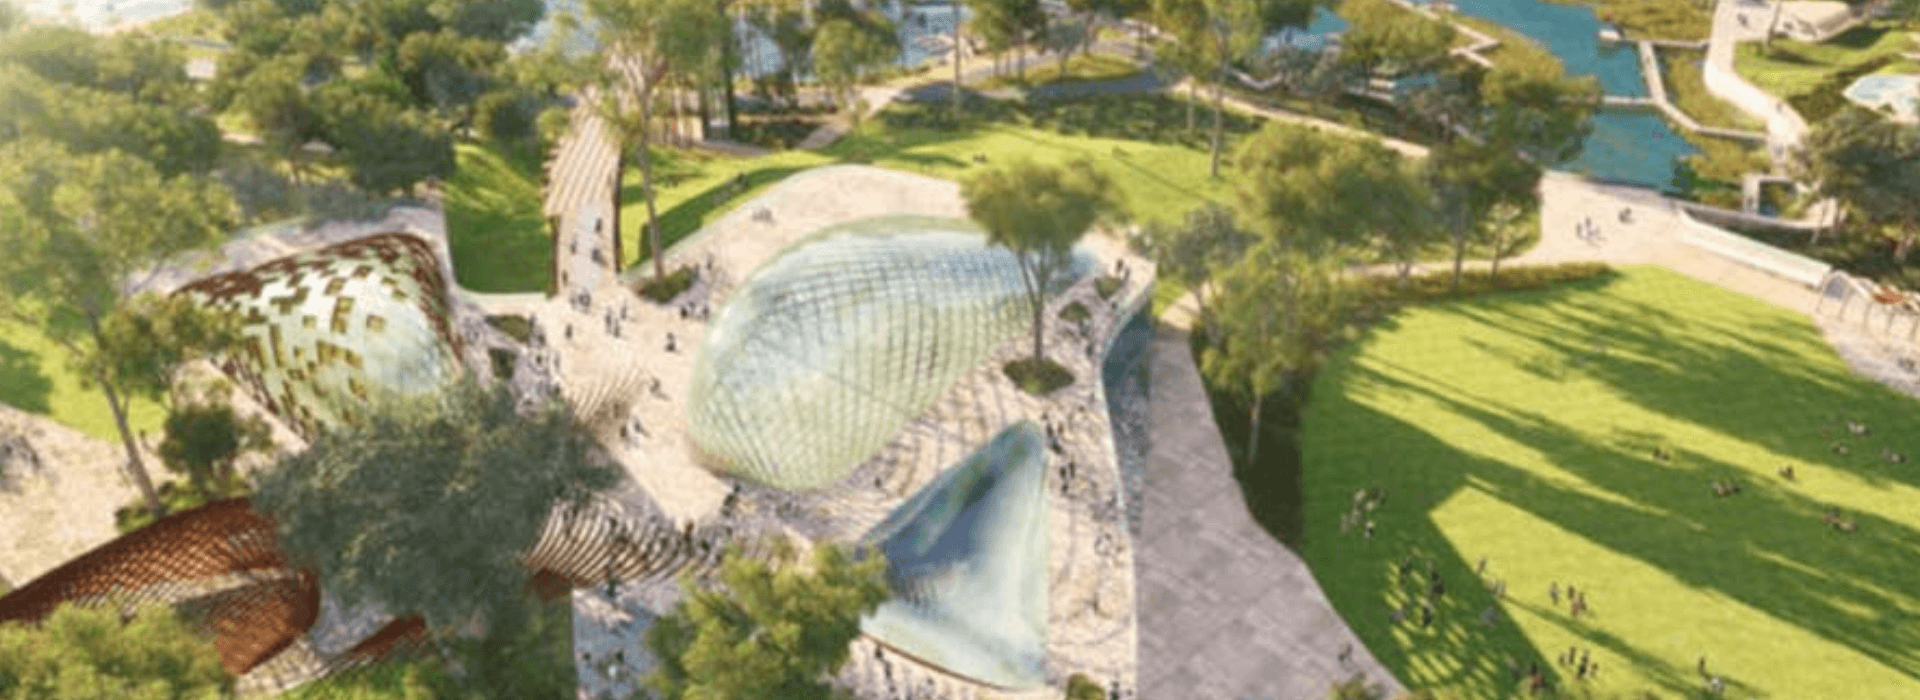 victoria-park-golf-course-development-masterplan-unveiled-brisbane-construction